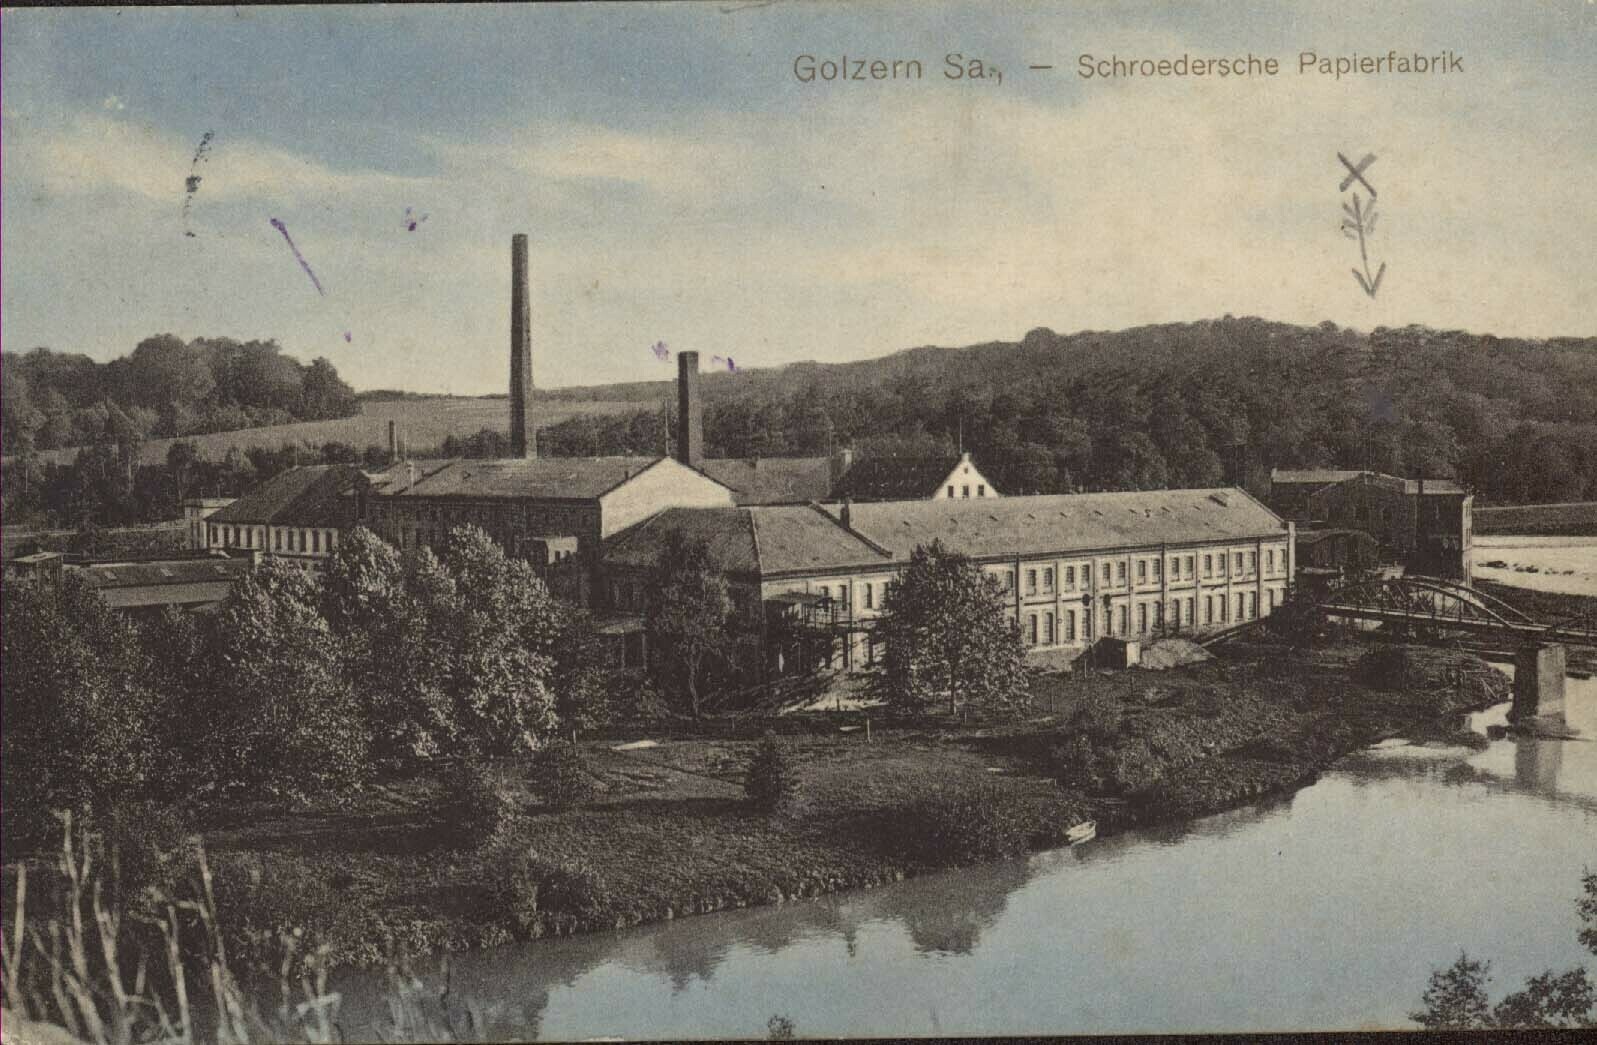 Schroedersche Papierfabrik in Golzern (Kreismuseum Grimma RR-F)